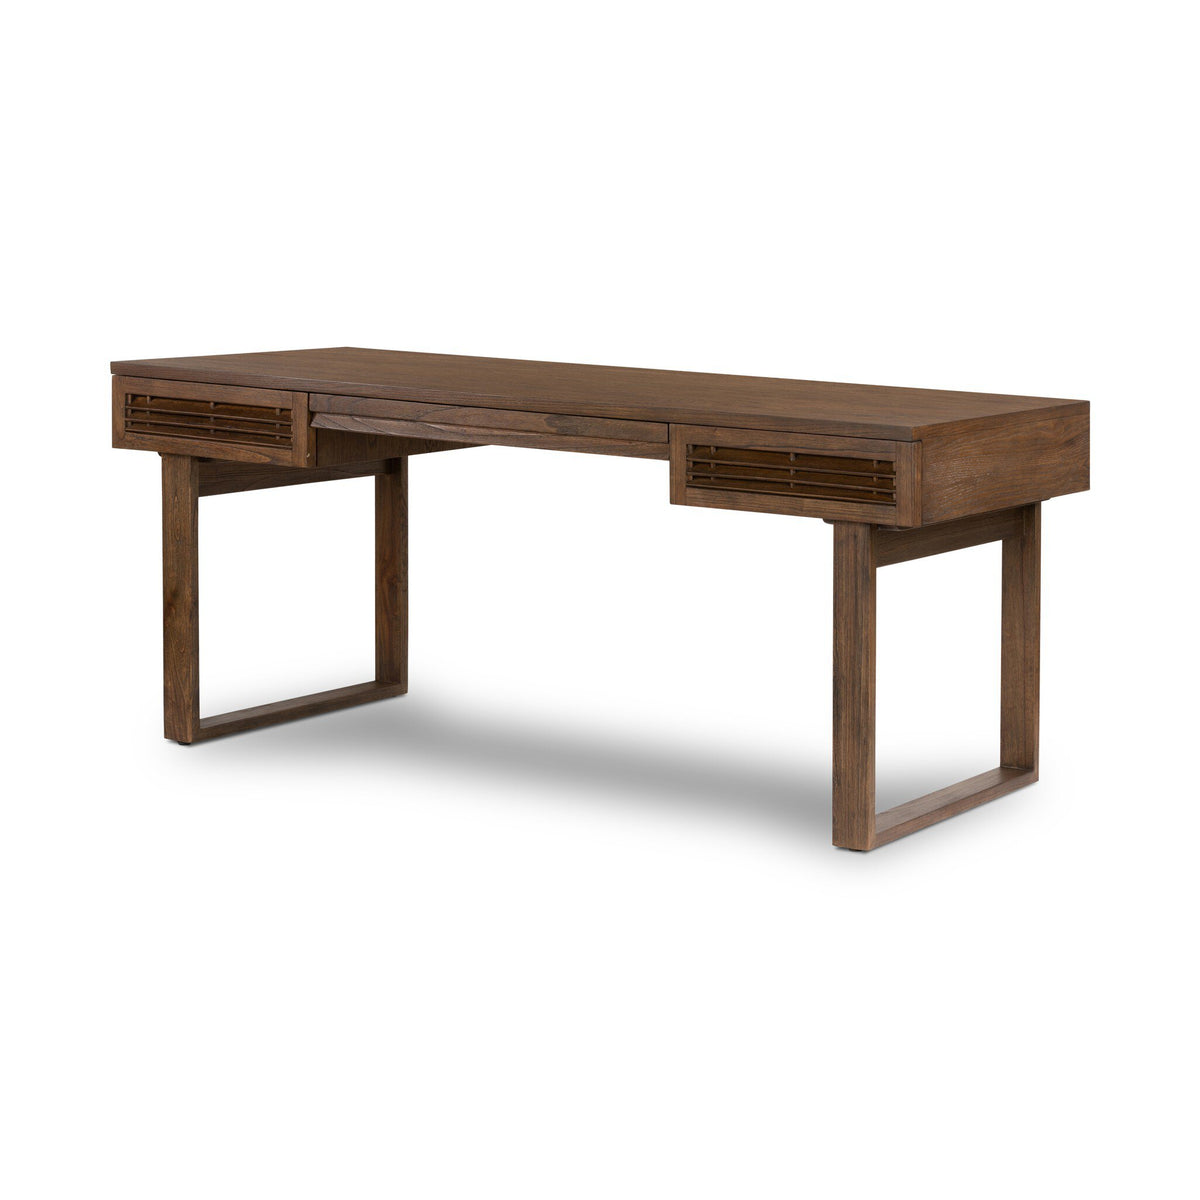 Brown Wood Desk